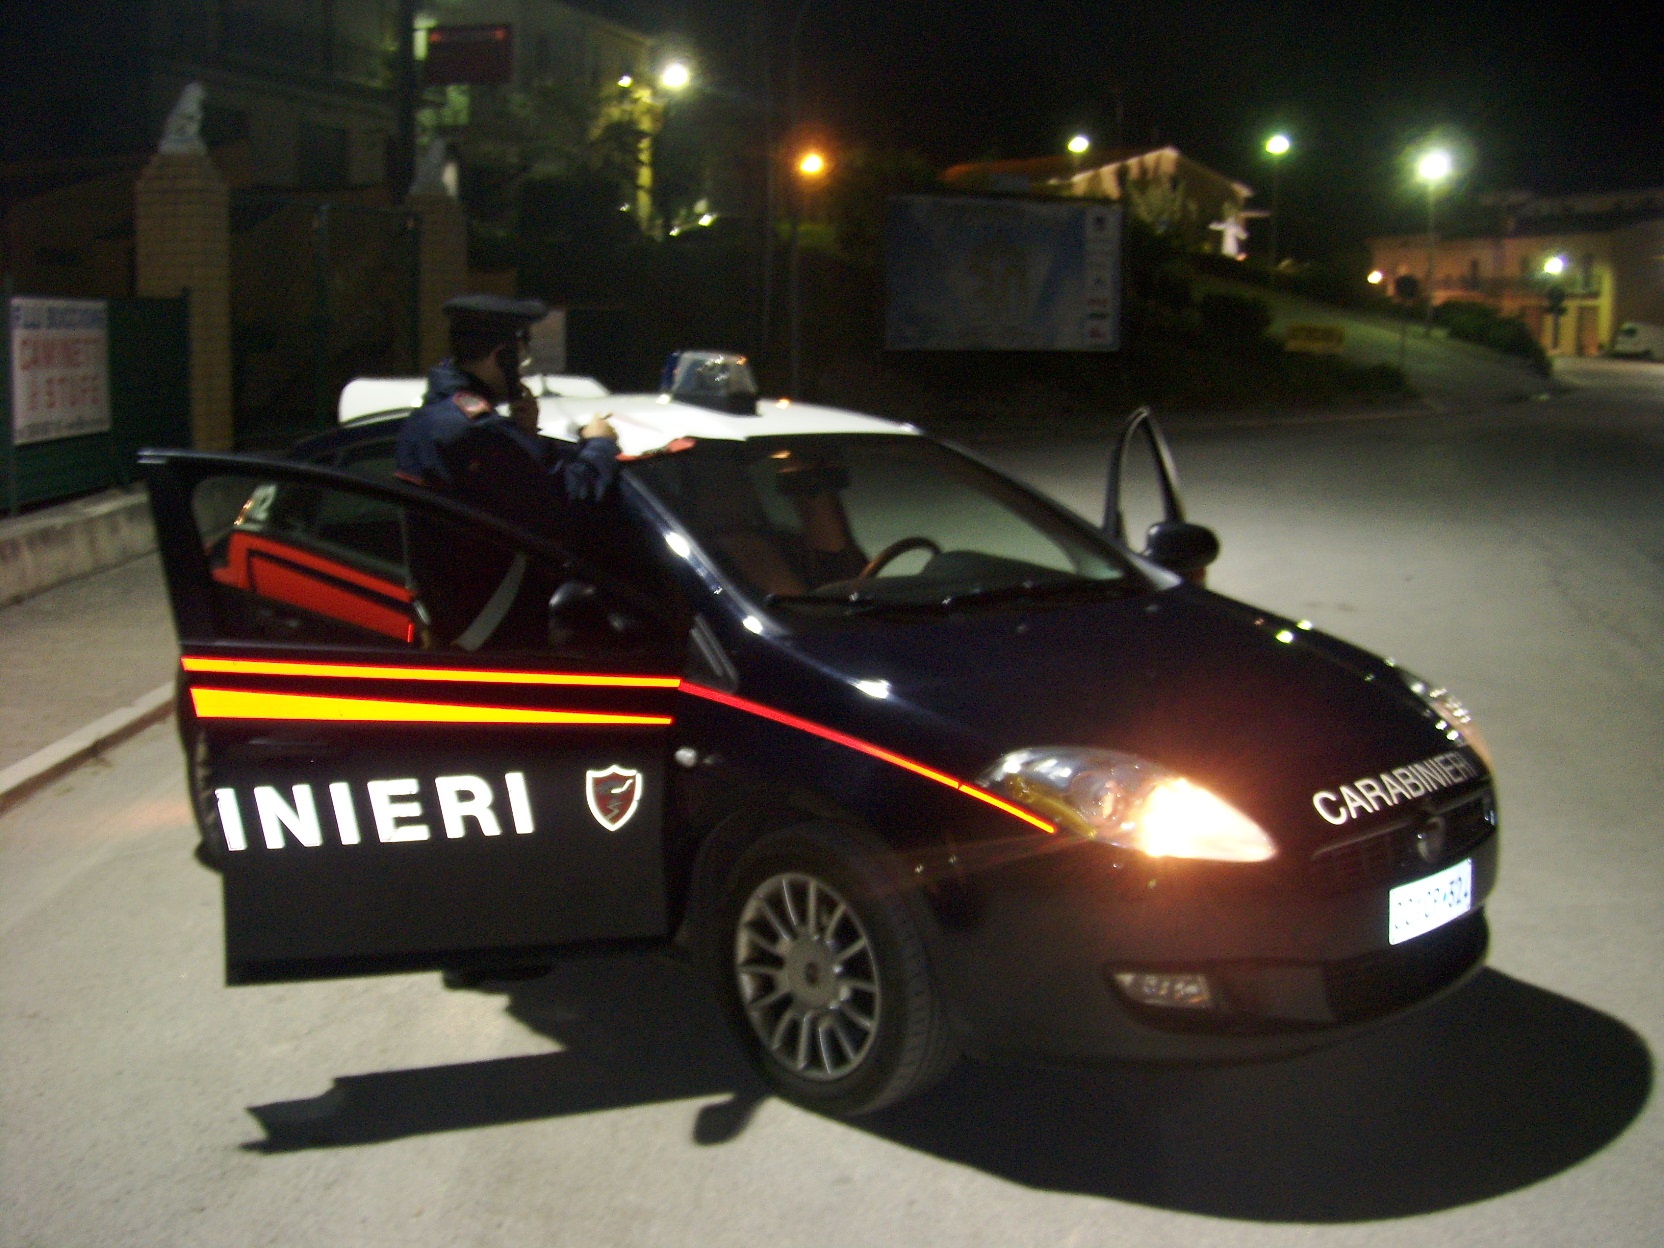 Val Fortore, controlli dei Carabinieri: patenti ritirate, veicoli sequestrati e contravvenzioni per violazioni del codice della strada